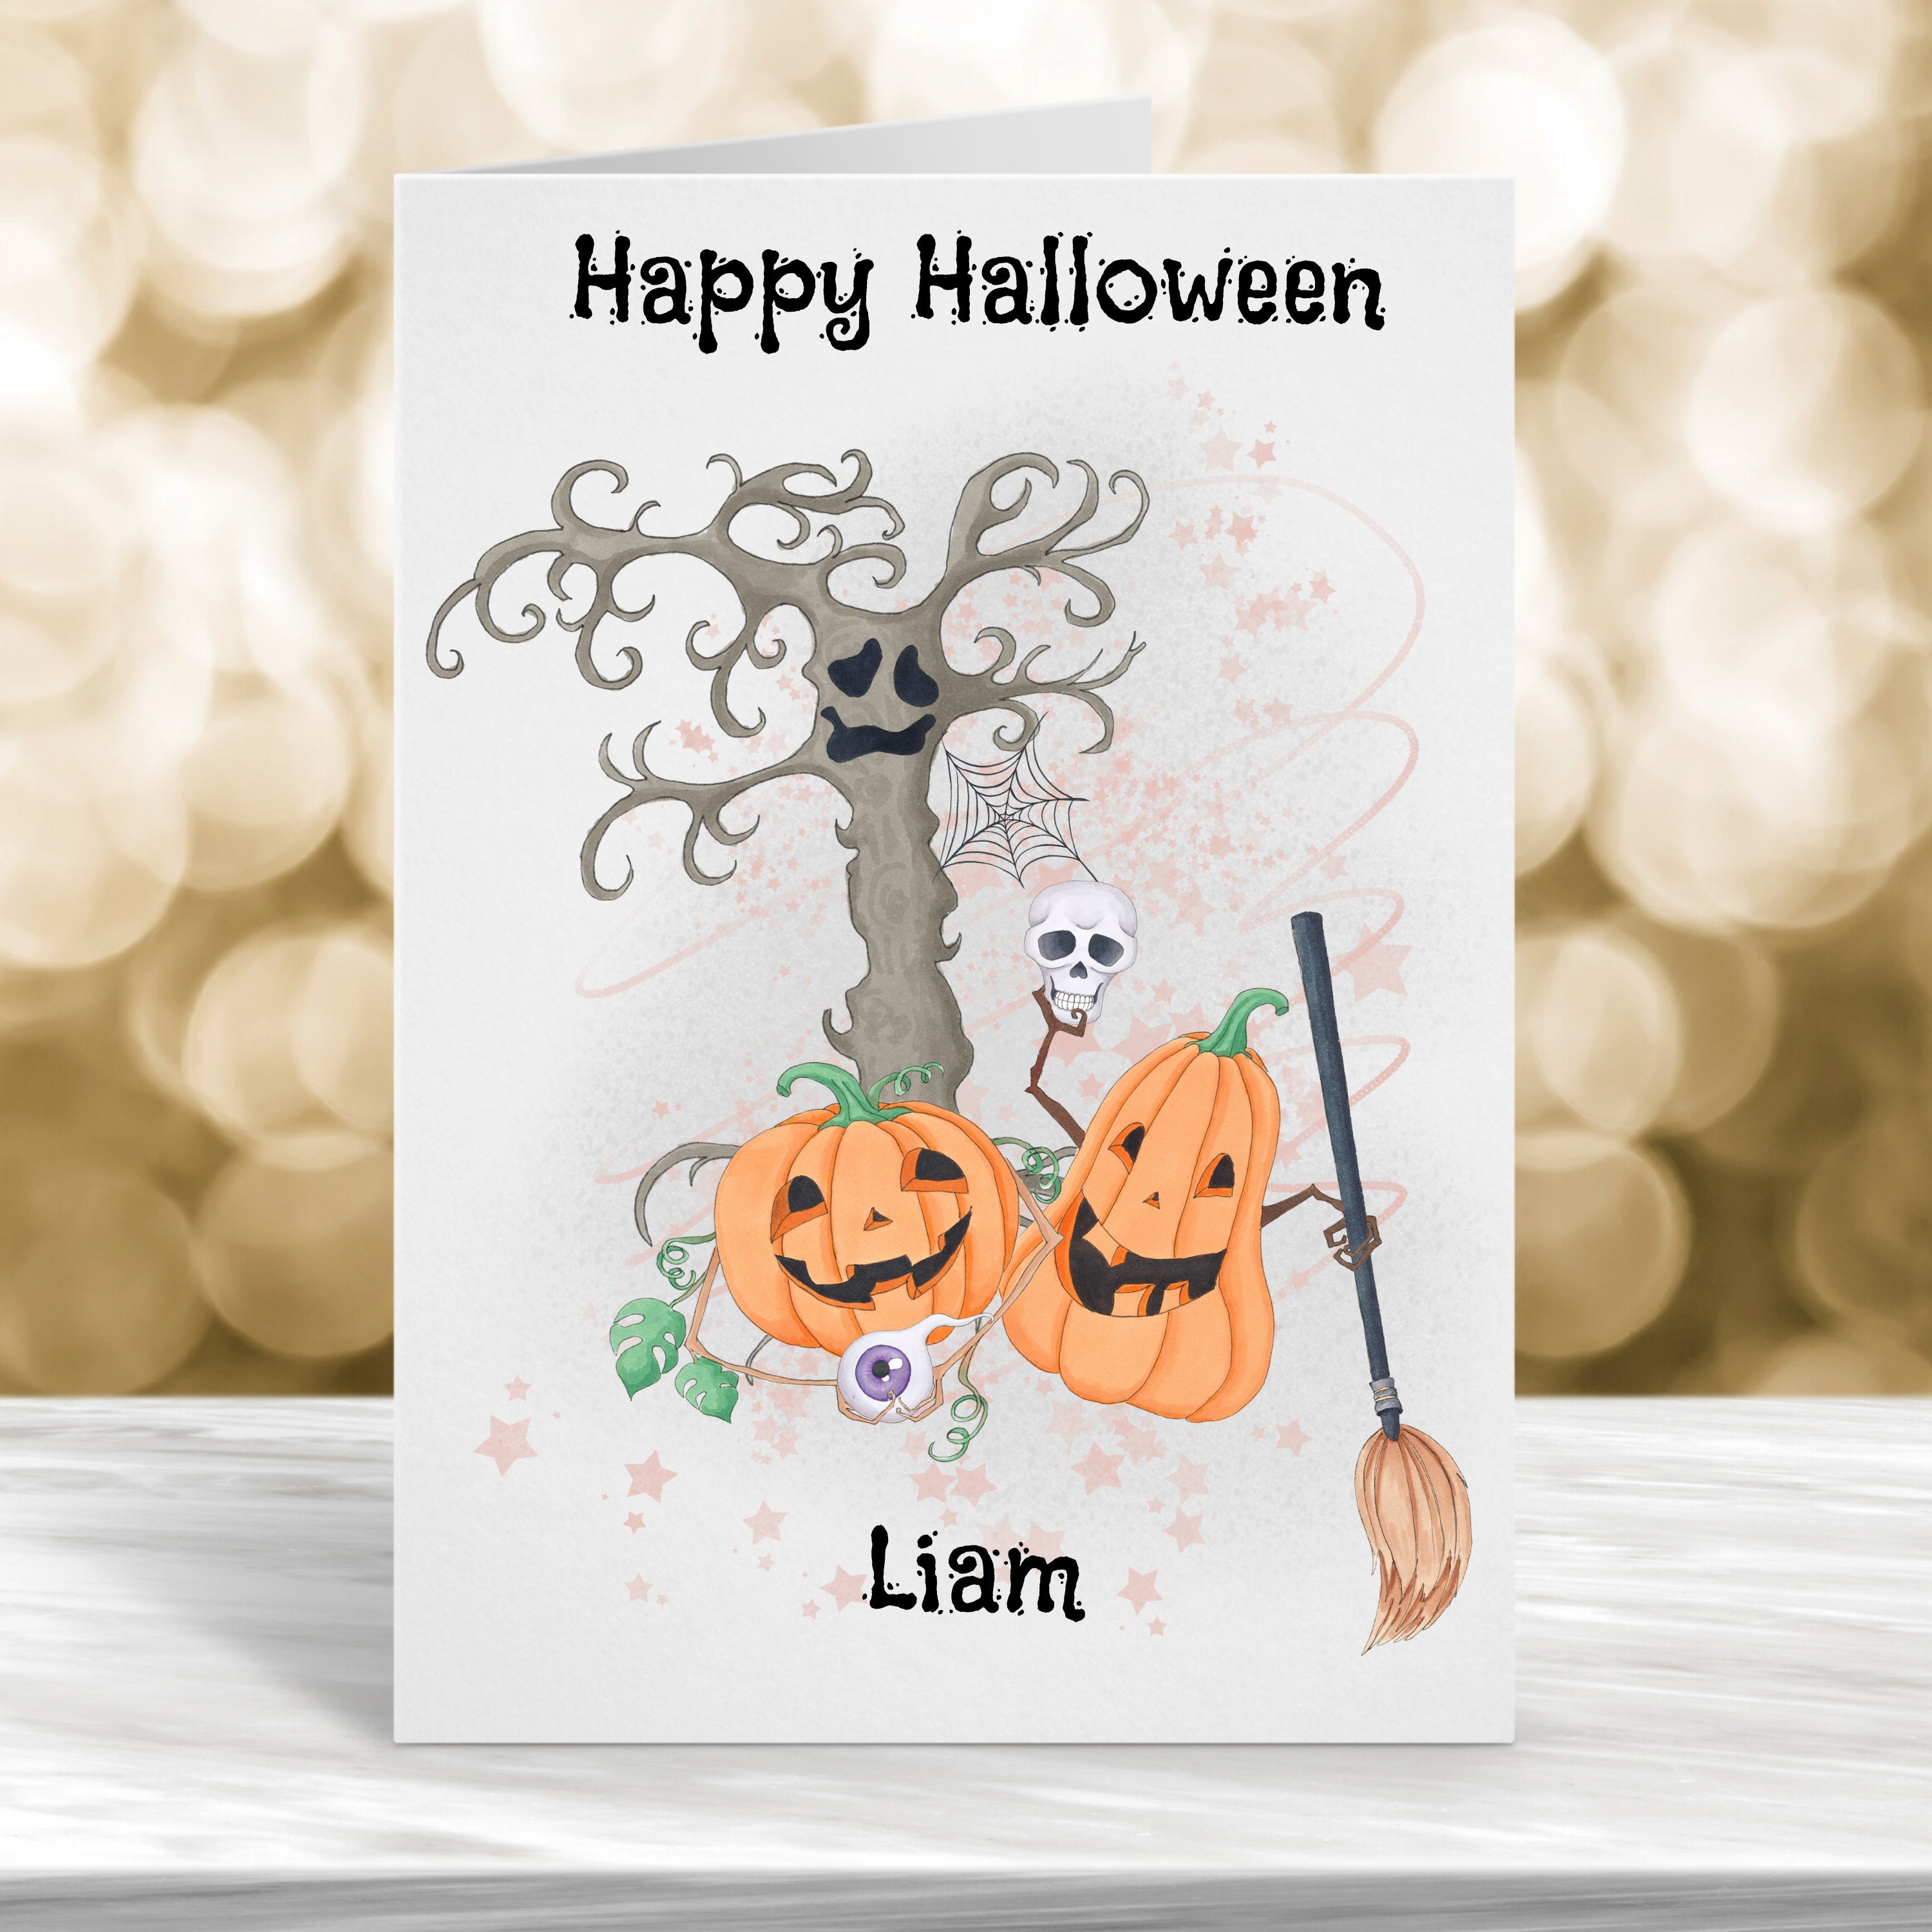 Happy halloween card with mandrake • adesivos para a parede gato